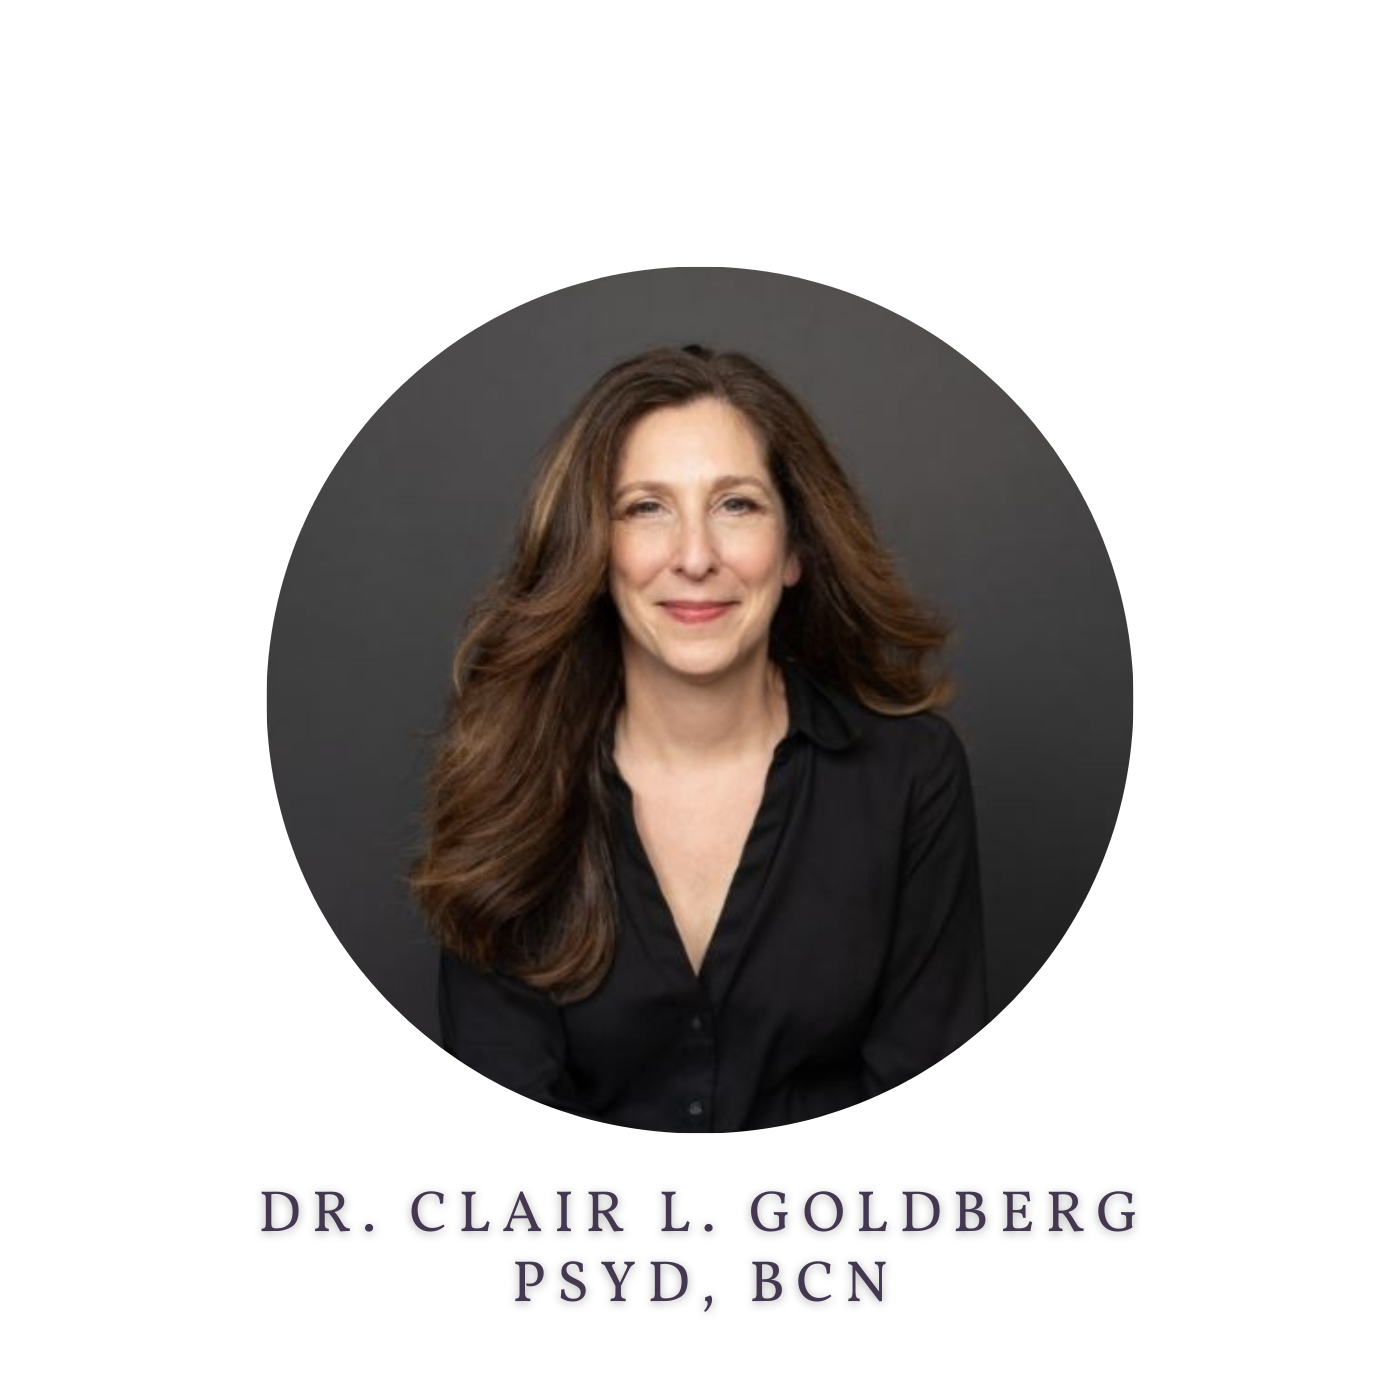 Dr. Clair L. Goldberg, PsyD, BCN